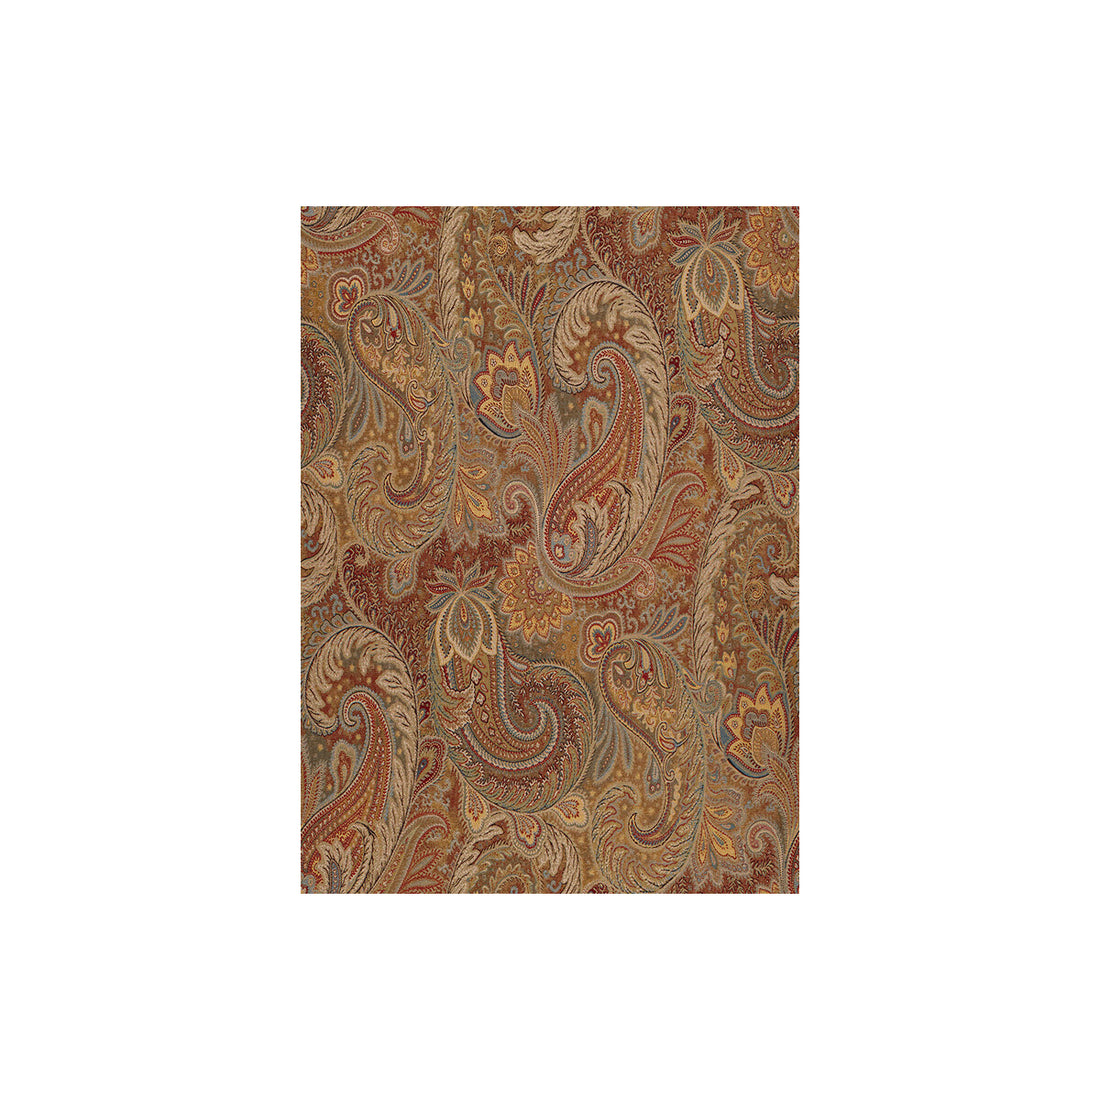 Kravet Design fabric in 31998-415 color - pattern 31998.415.0 - by Kravet Design